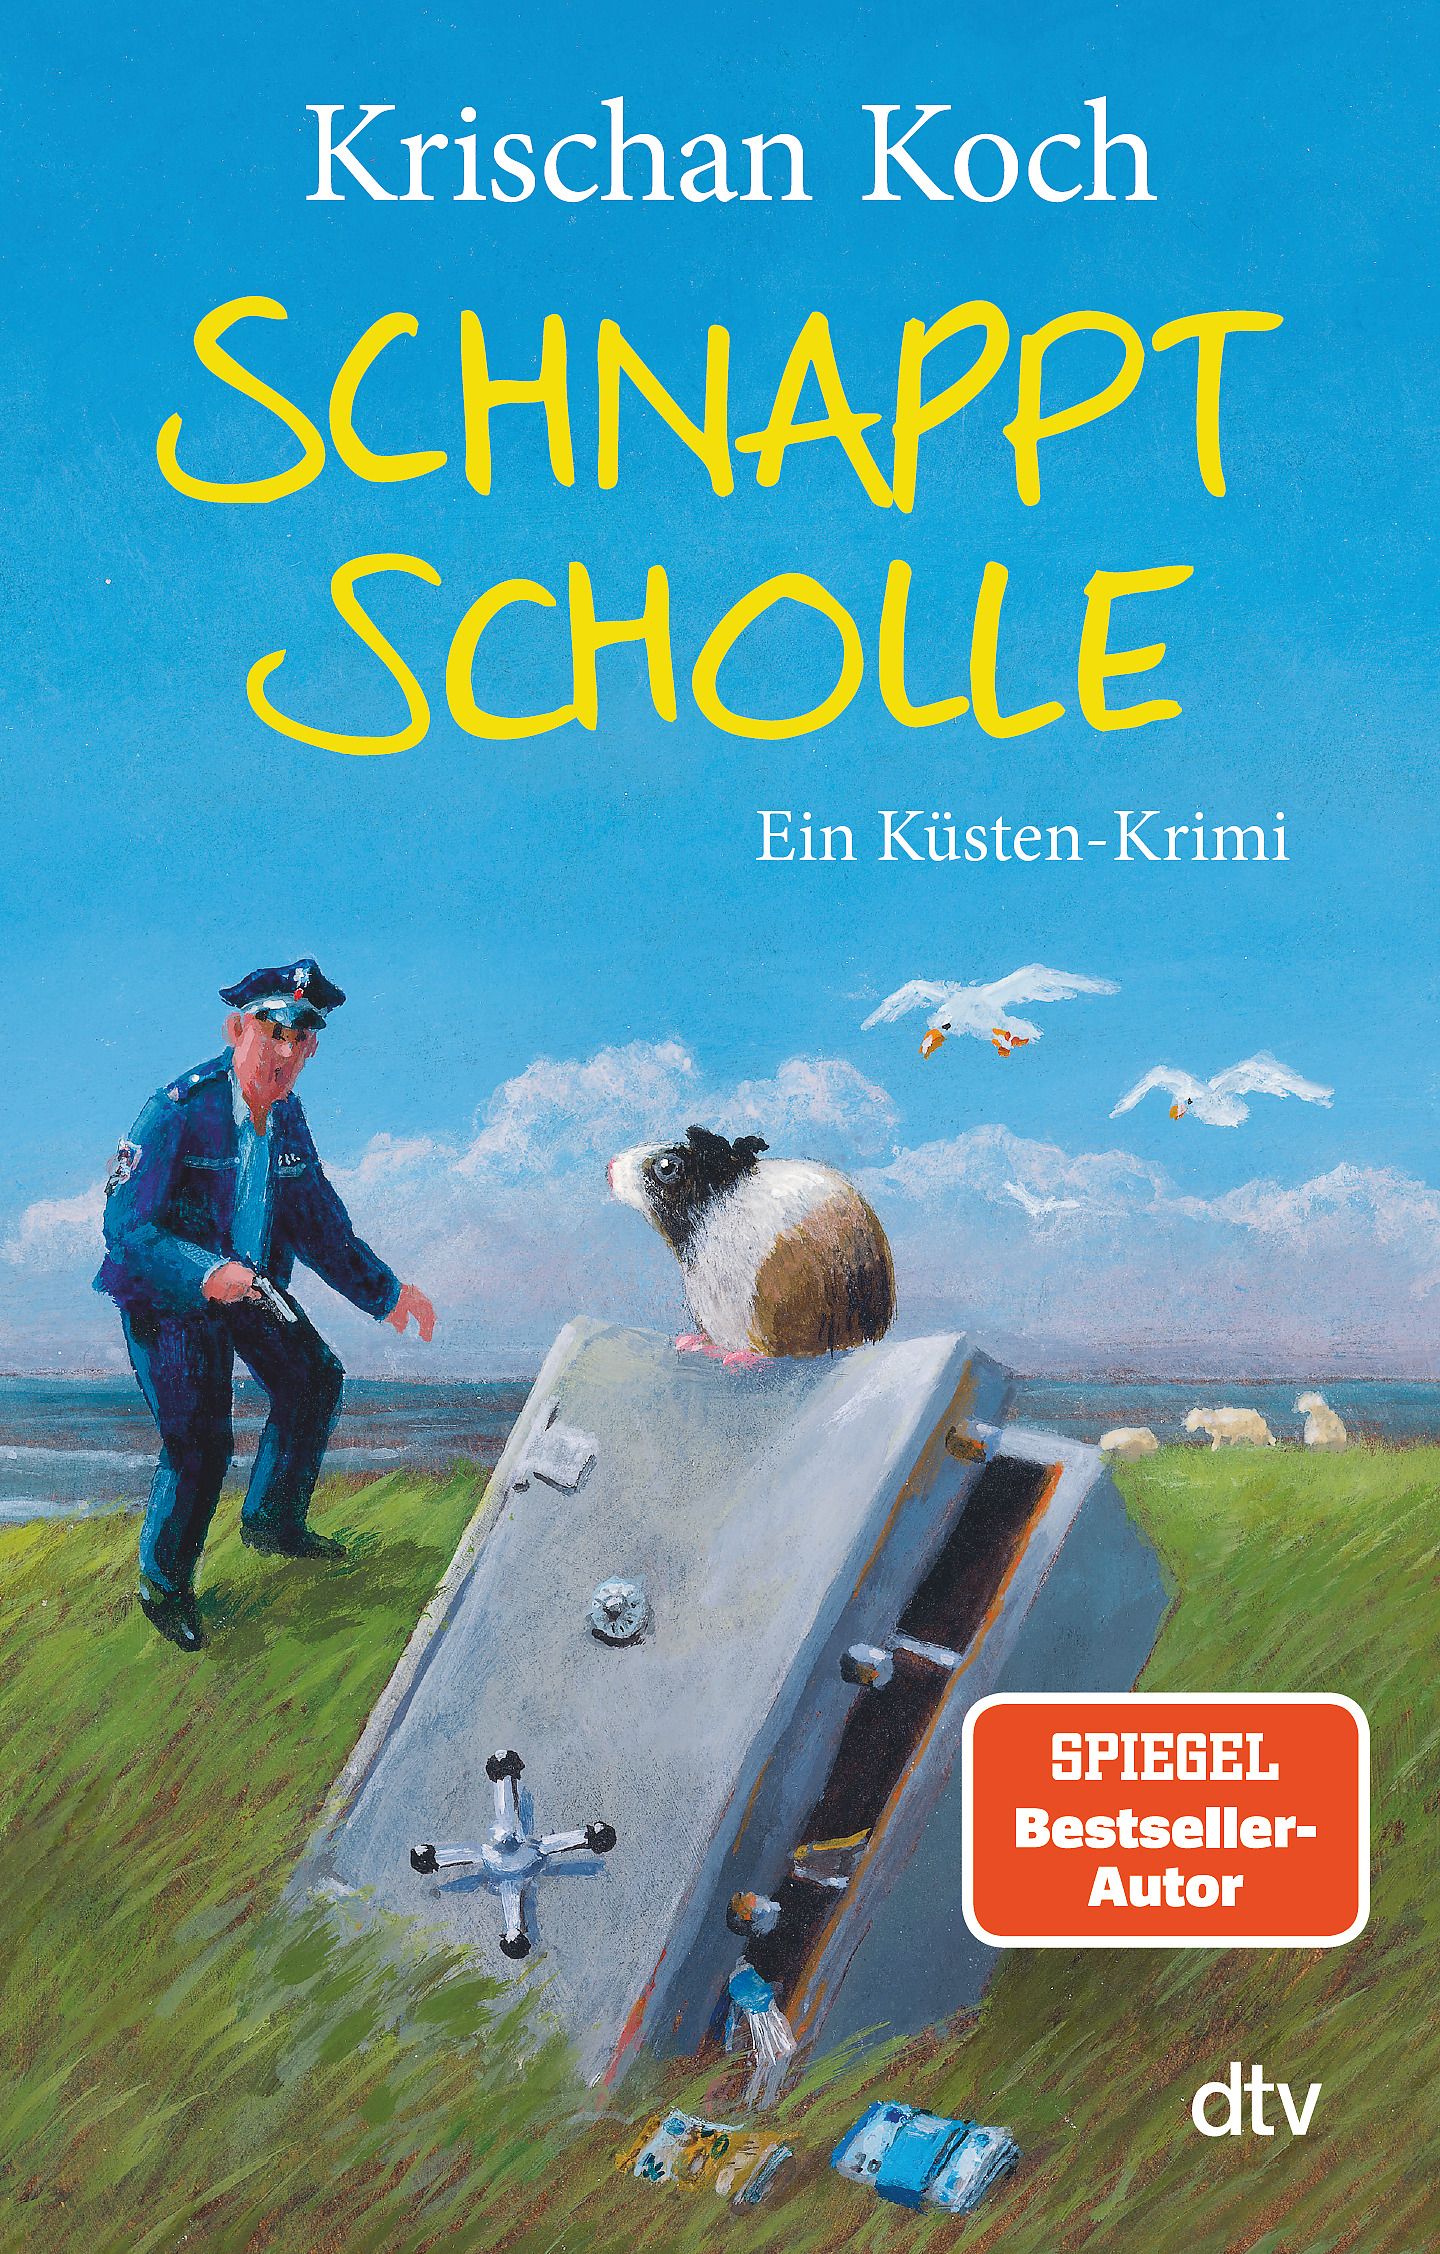 Cover des Buches Schnappt Scholle von Krischan Koch.